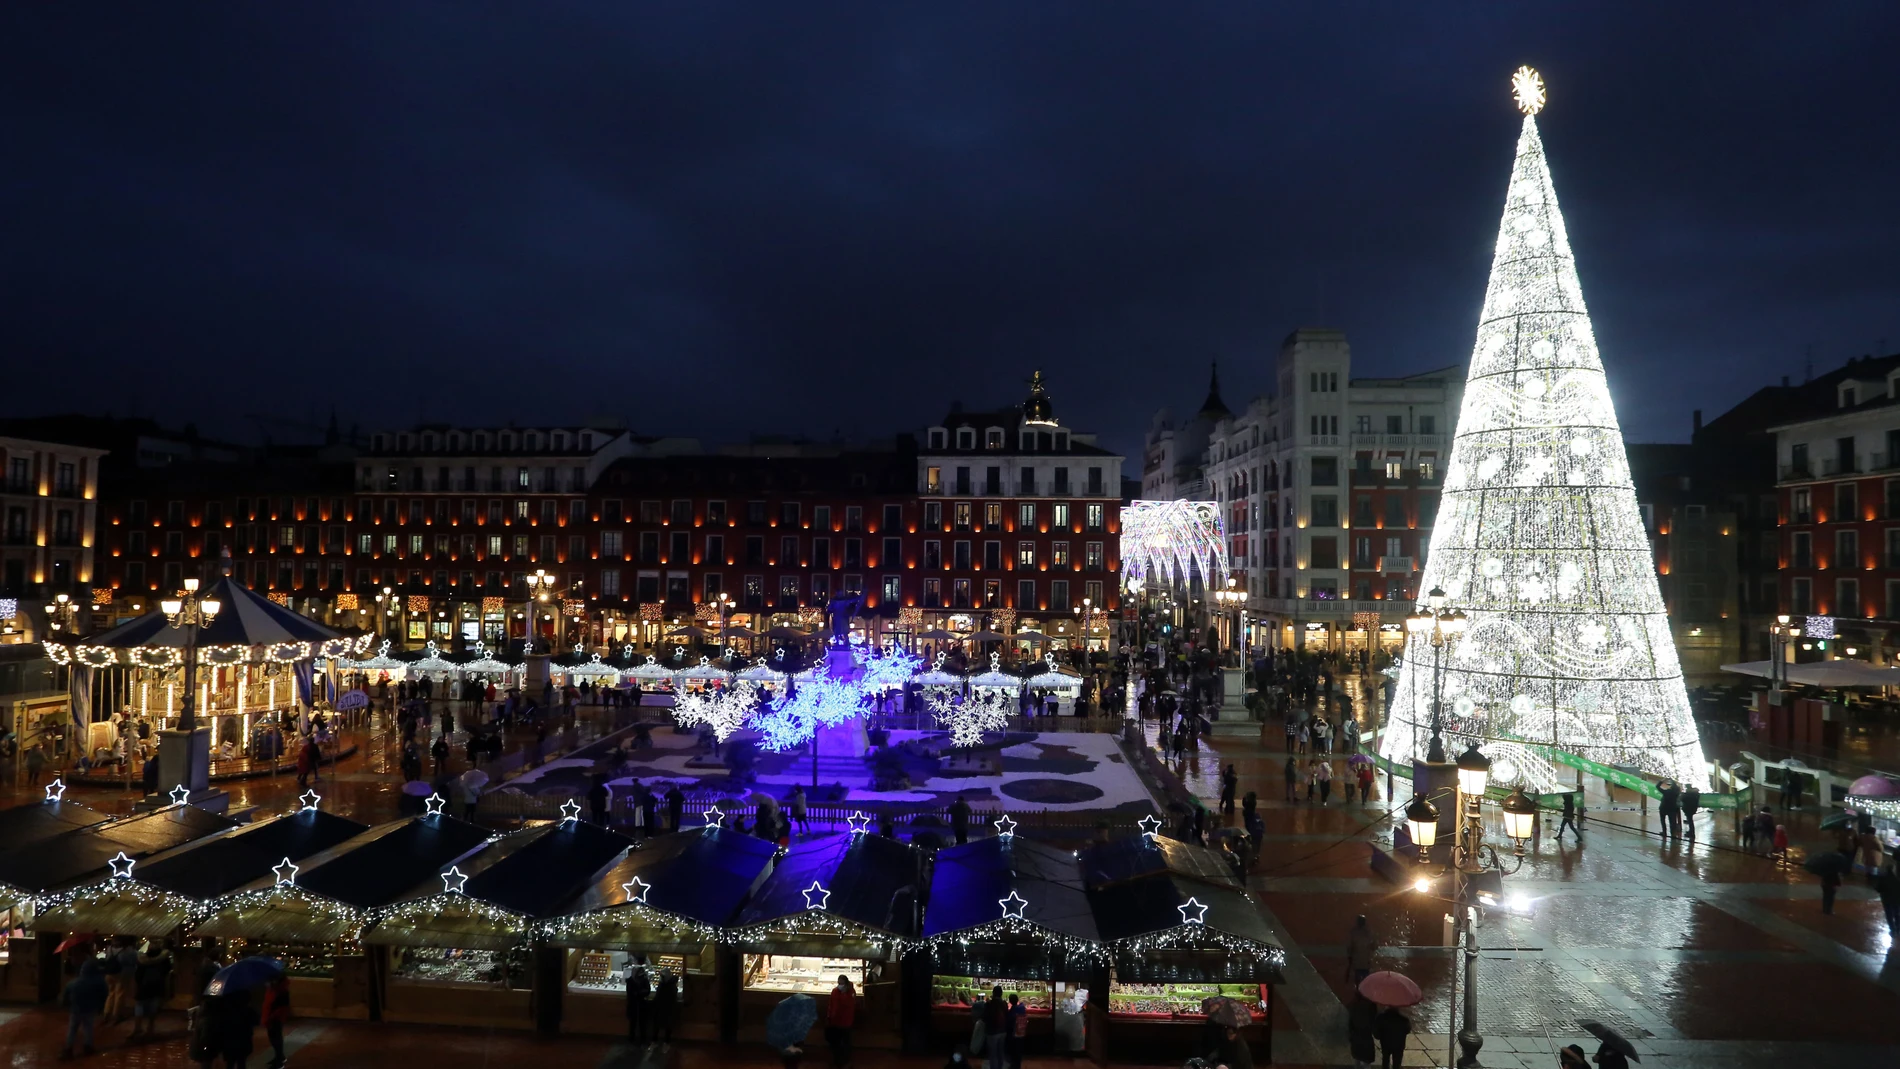 Valladolid enciende las luces de Navidad